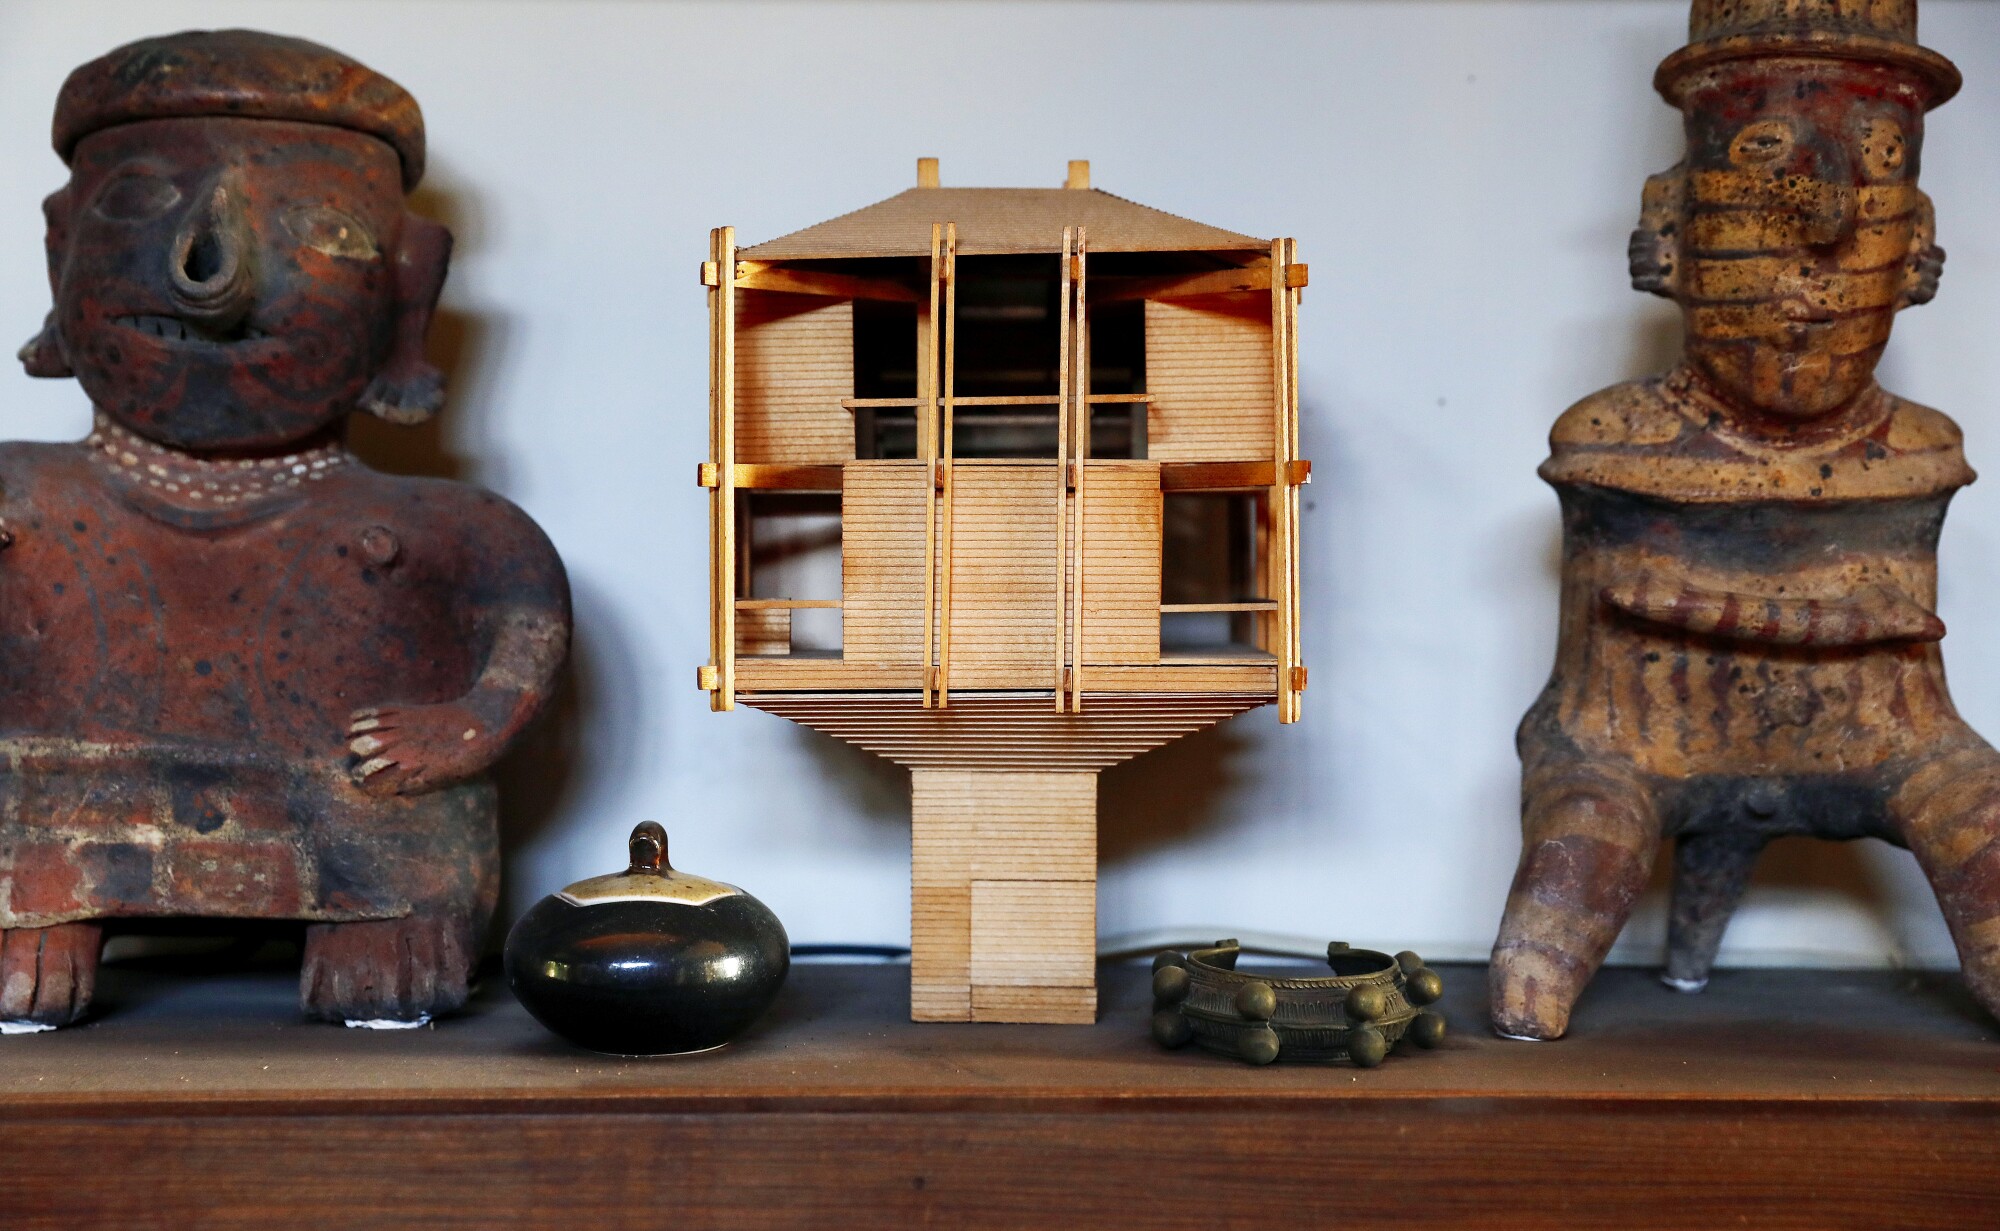 مدل چوبی خانه درختی برنارد قاضی در قفسه ای بین مجسمه های سبک ماقبل کلمبیایی قرار گرفته است.